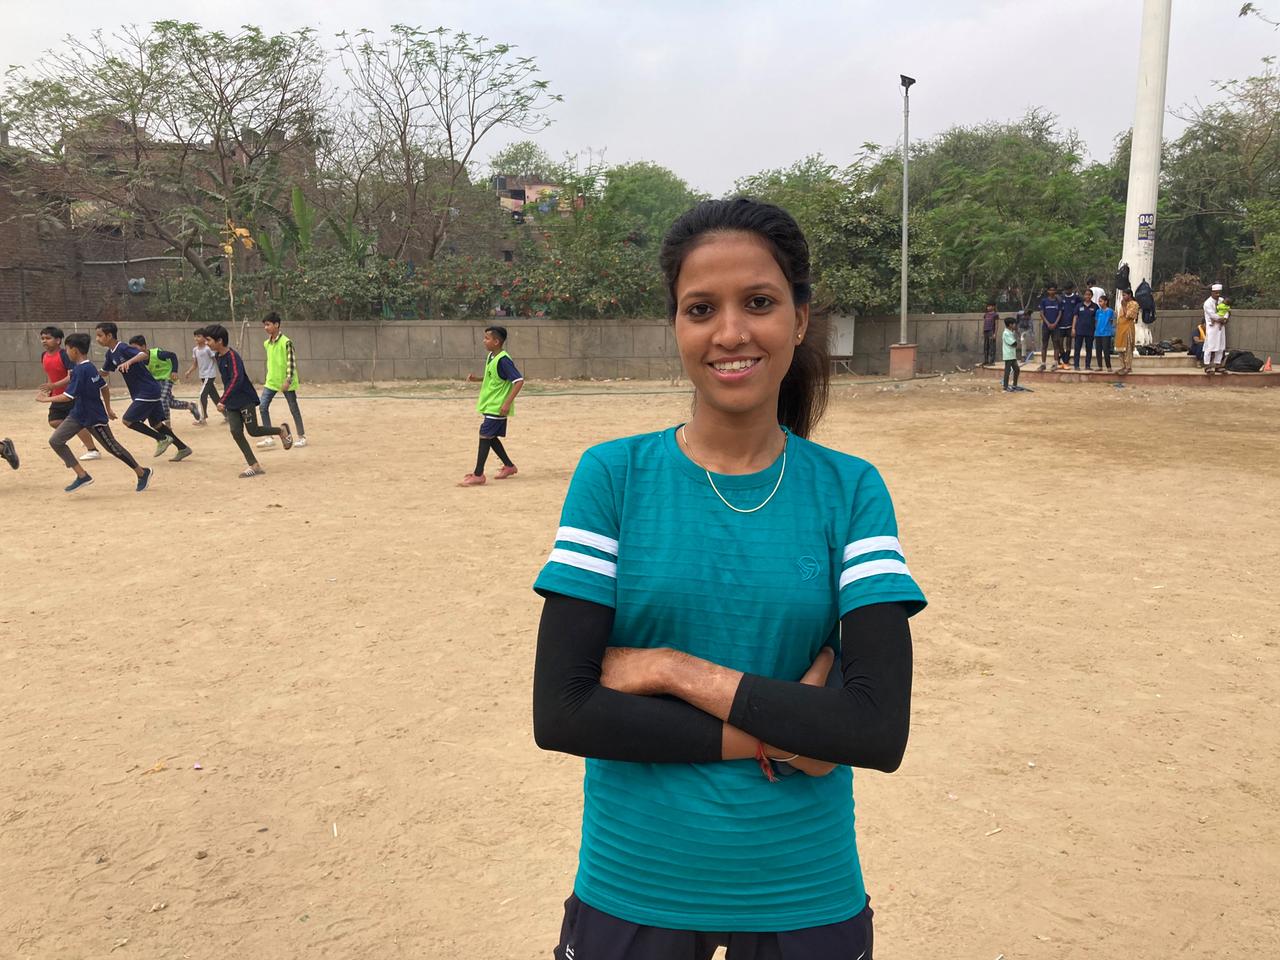 Sozialarbeiterin Sonam Chaurasiya arbeitet für "Slum Soccer" und will über den Fußball auch die Wertschätzung von Mädchen fördern.